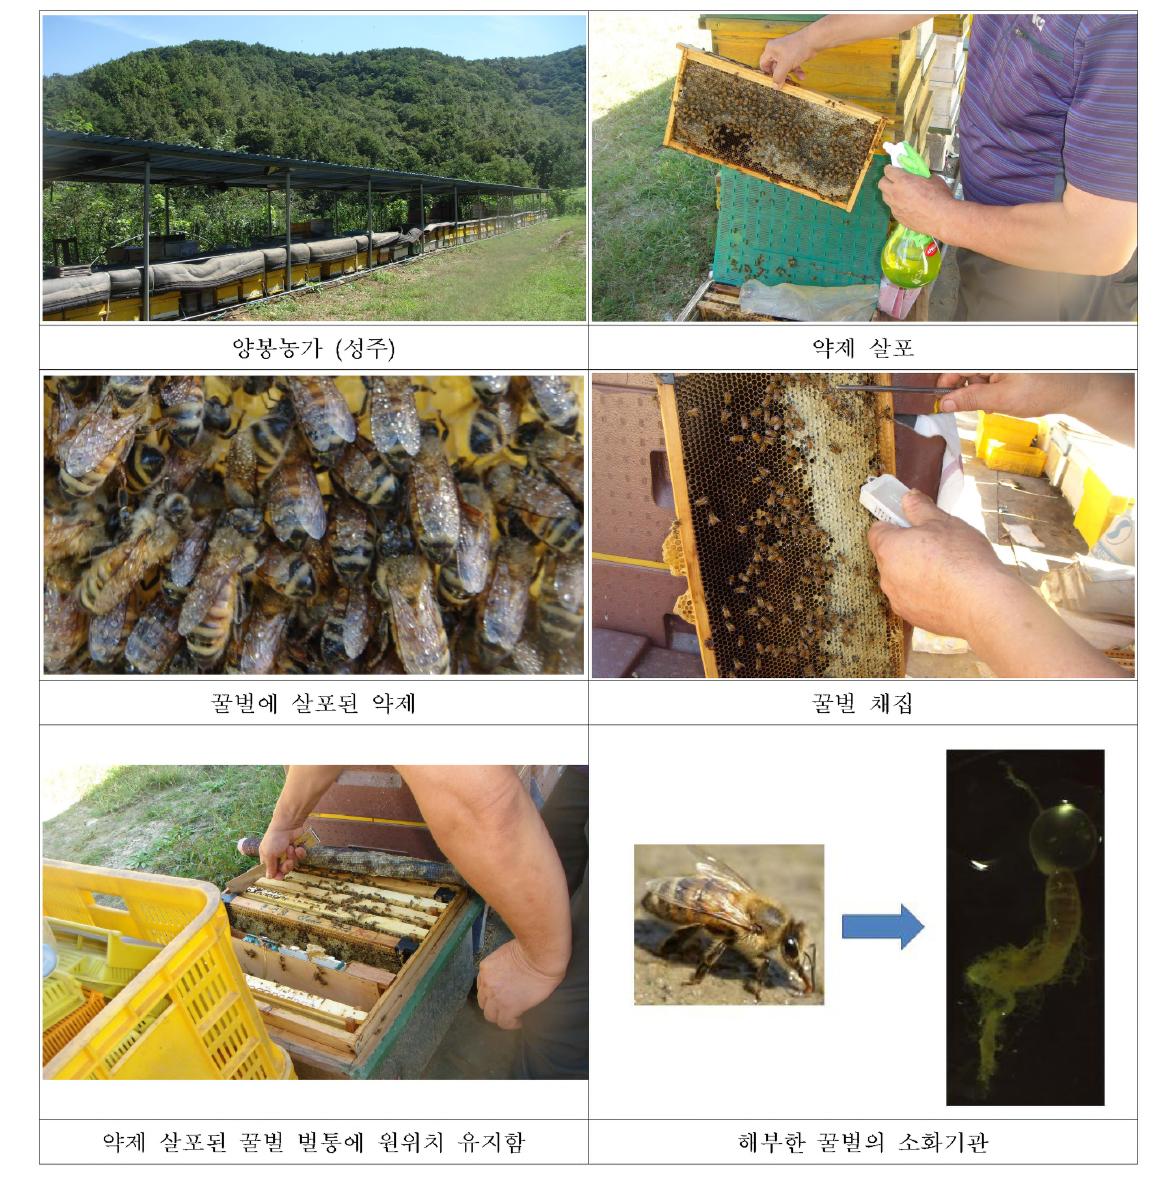 꿀벌에 대한 접촉 독성 실험